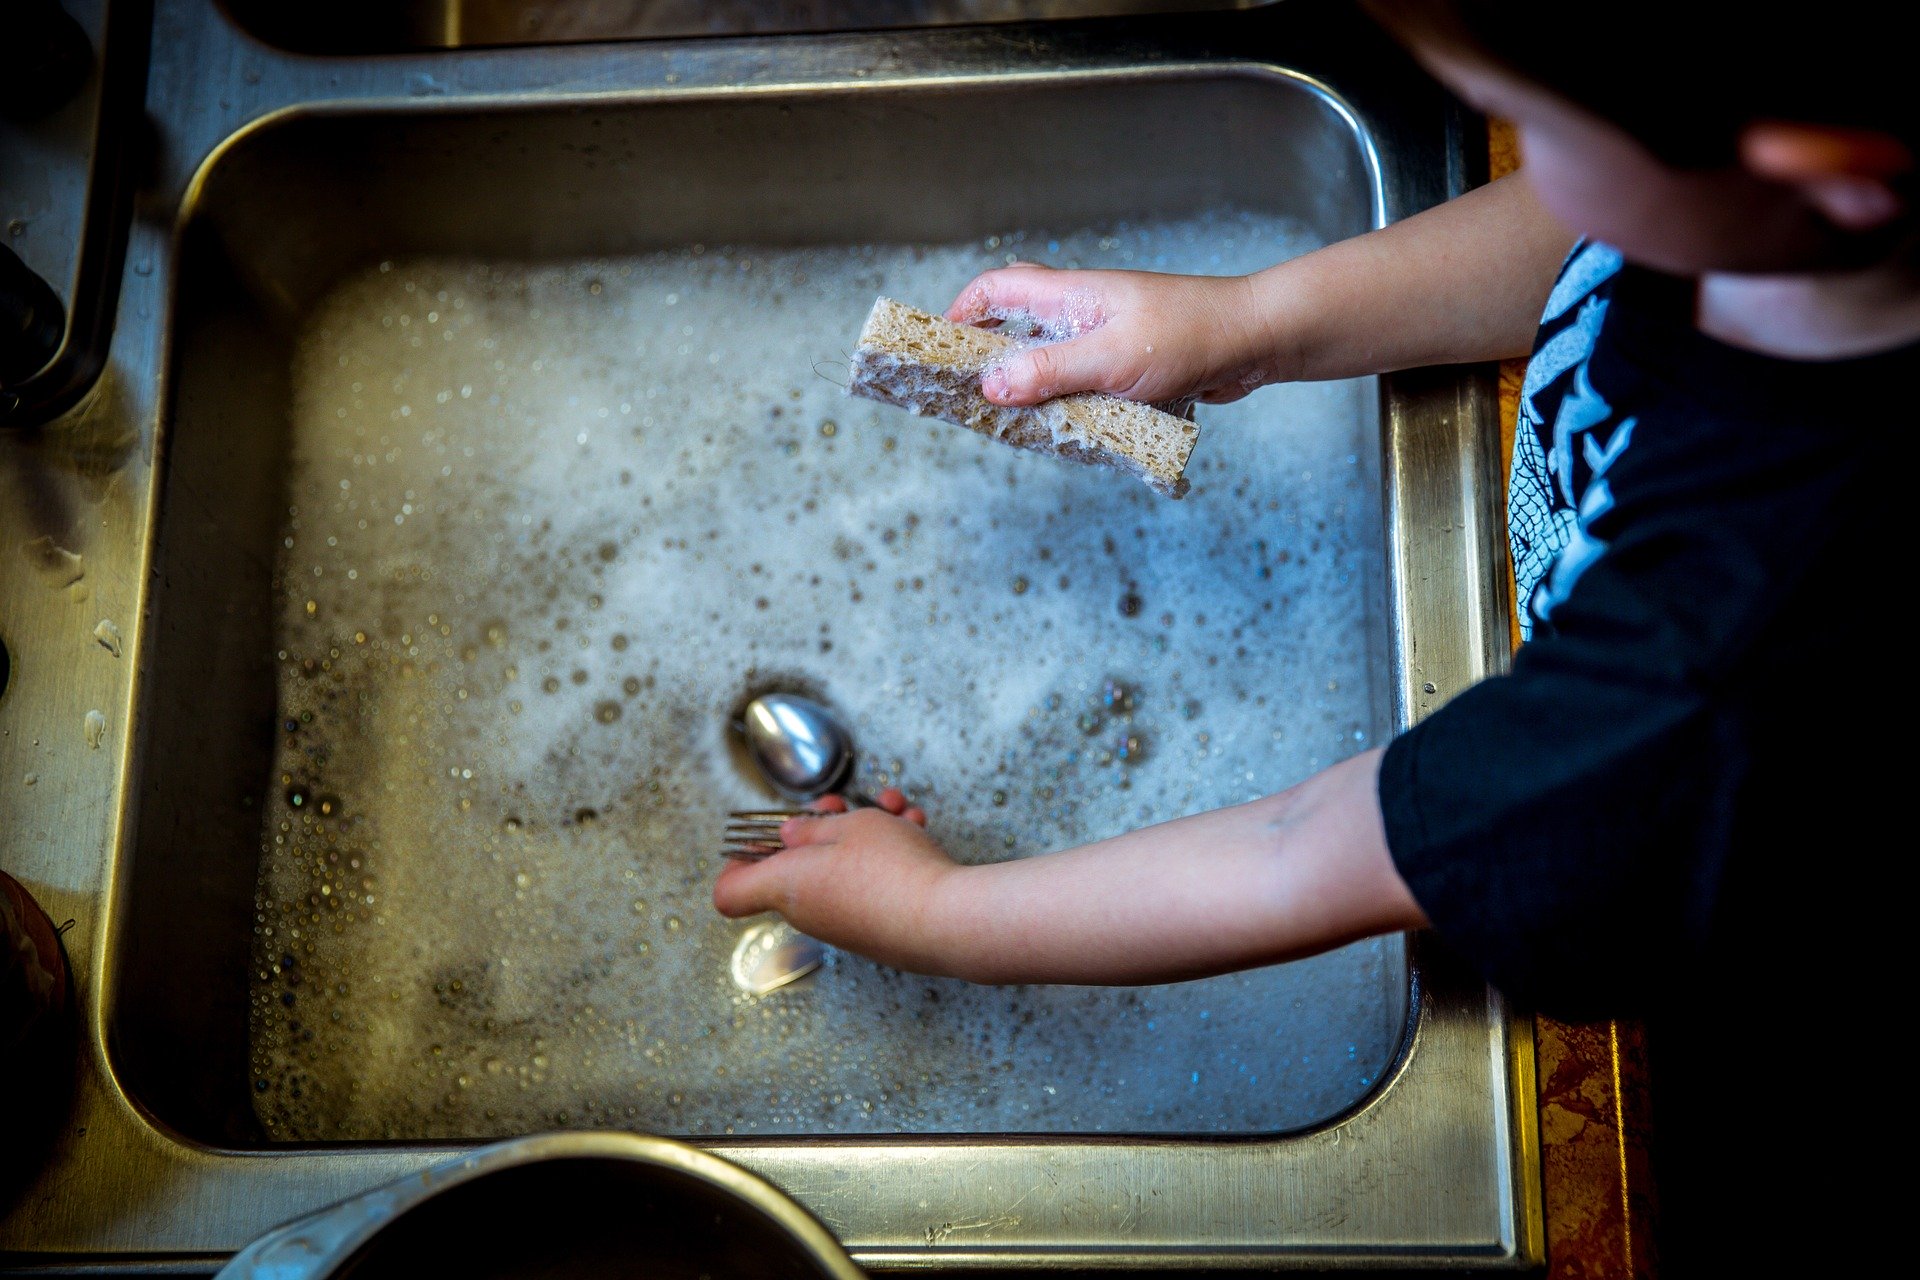 https://www.domex-uk.co.uk/wp-content/uploads/2020/09/Child-washing-dishes.jpg